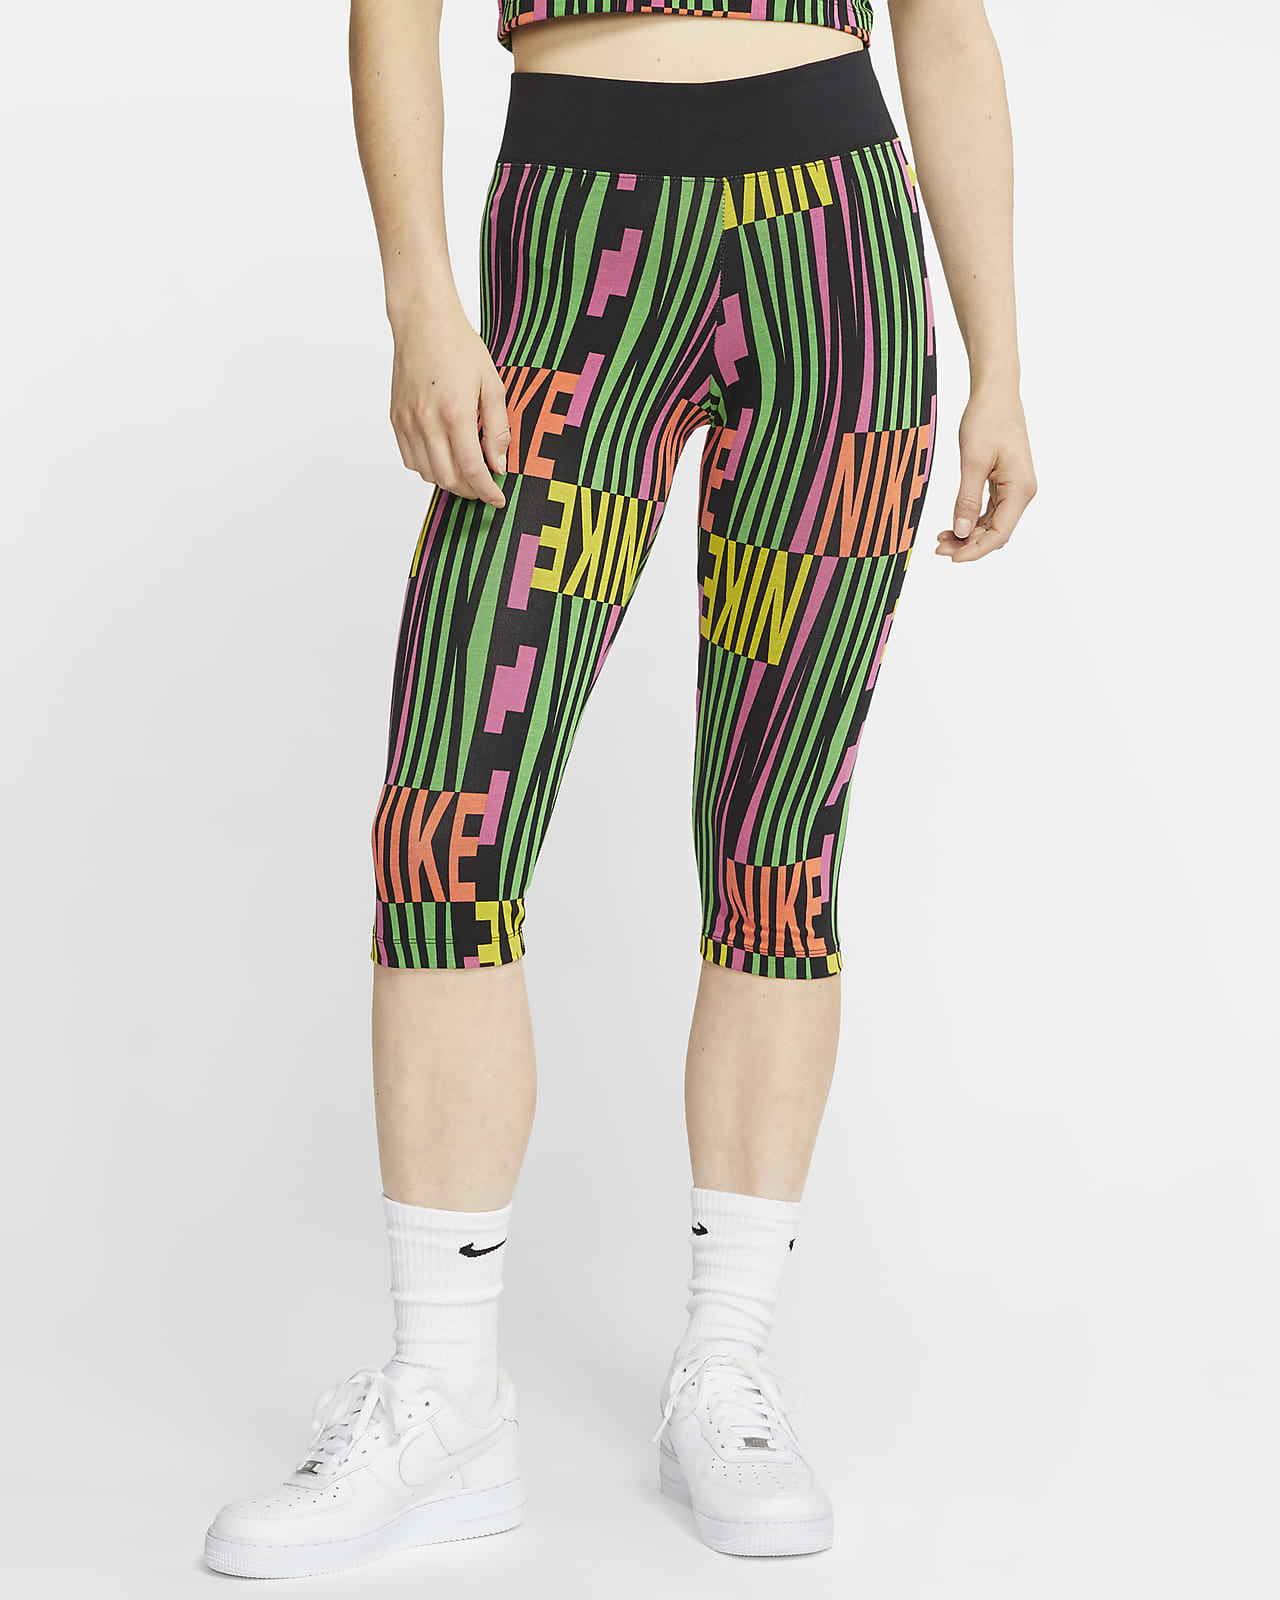 Nike Sportswear Women's Capri Pants 